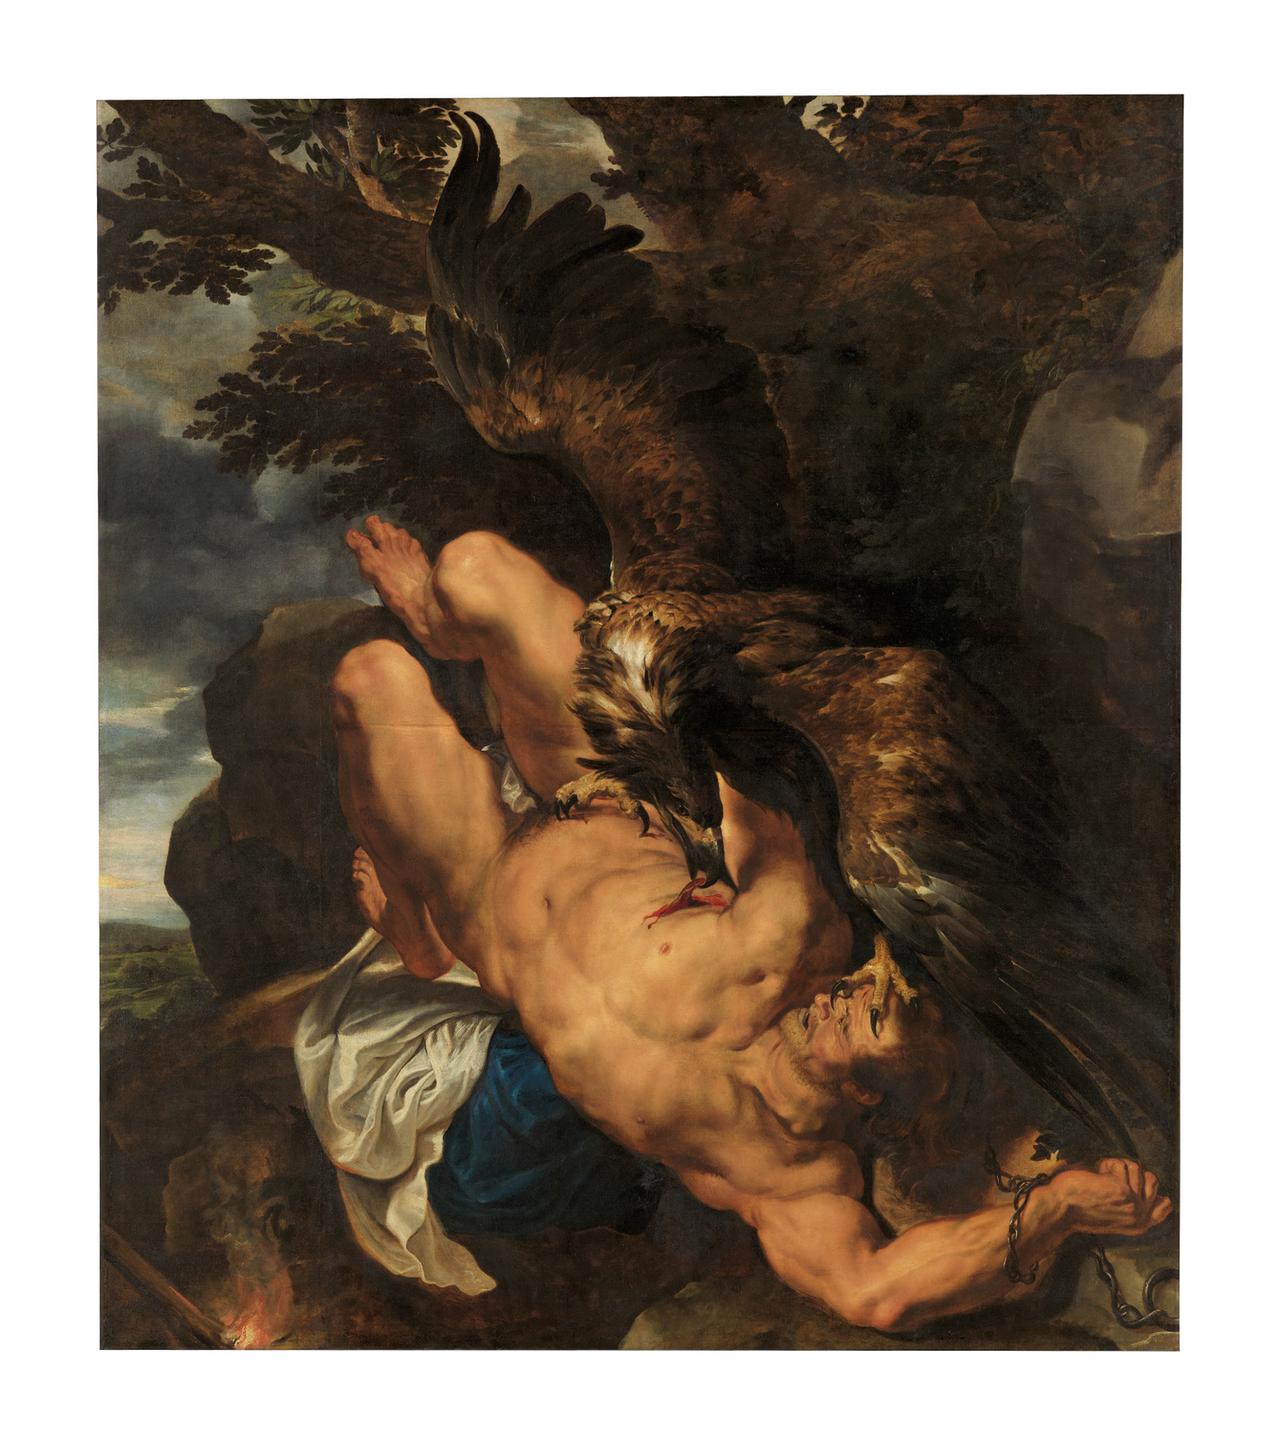 Das Gemälde "Der gefesselte Prometheus" von Peter Paul Rubens